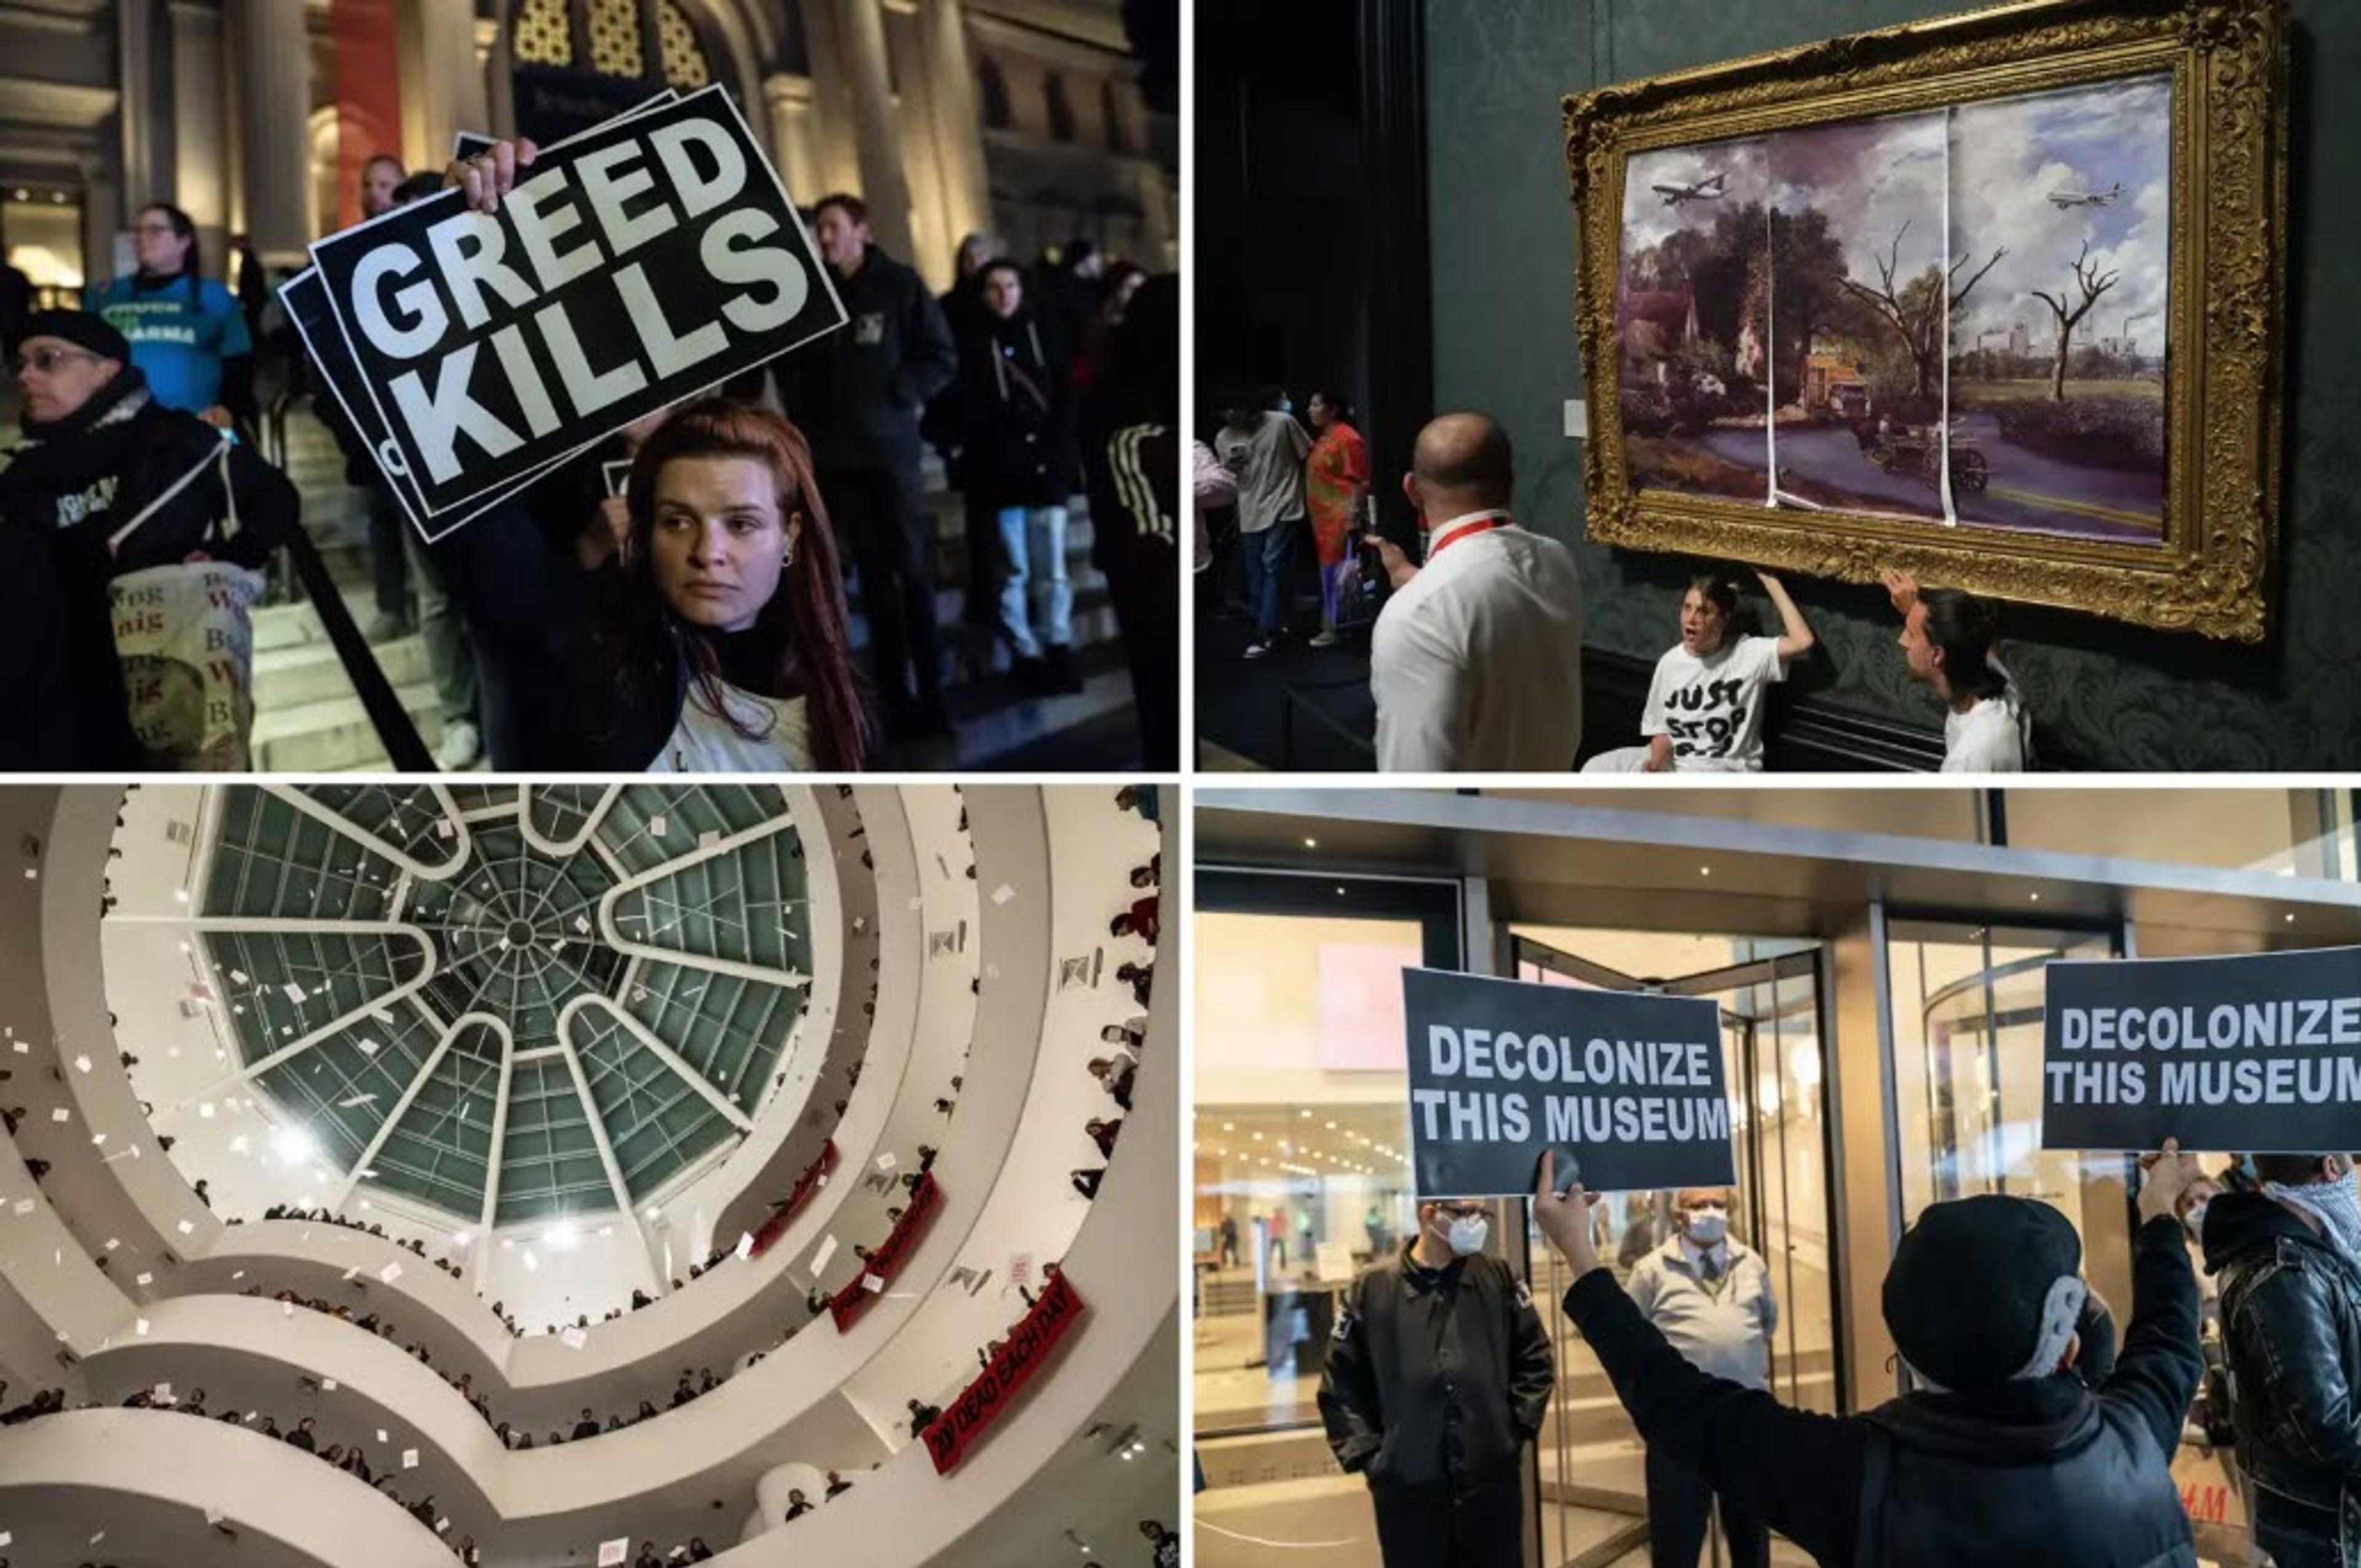 Activists disrupting museums